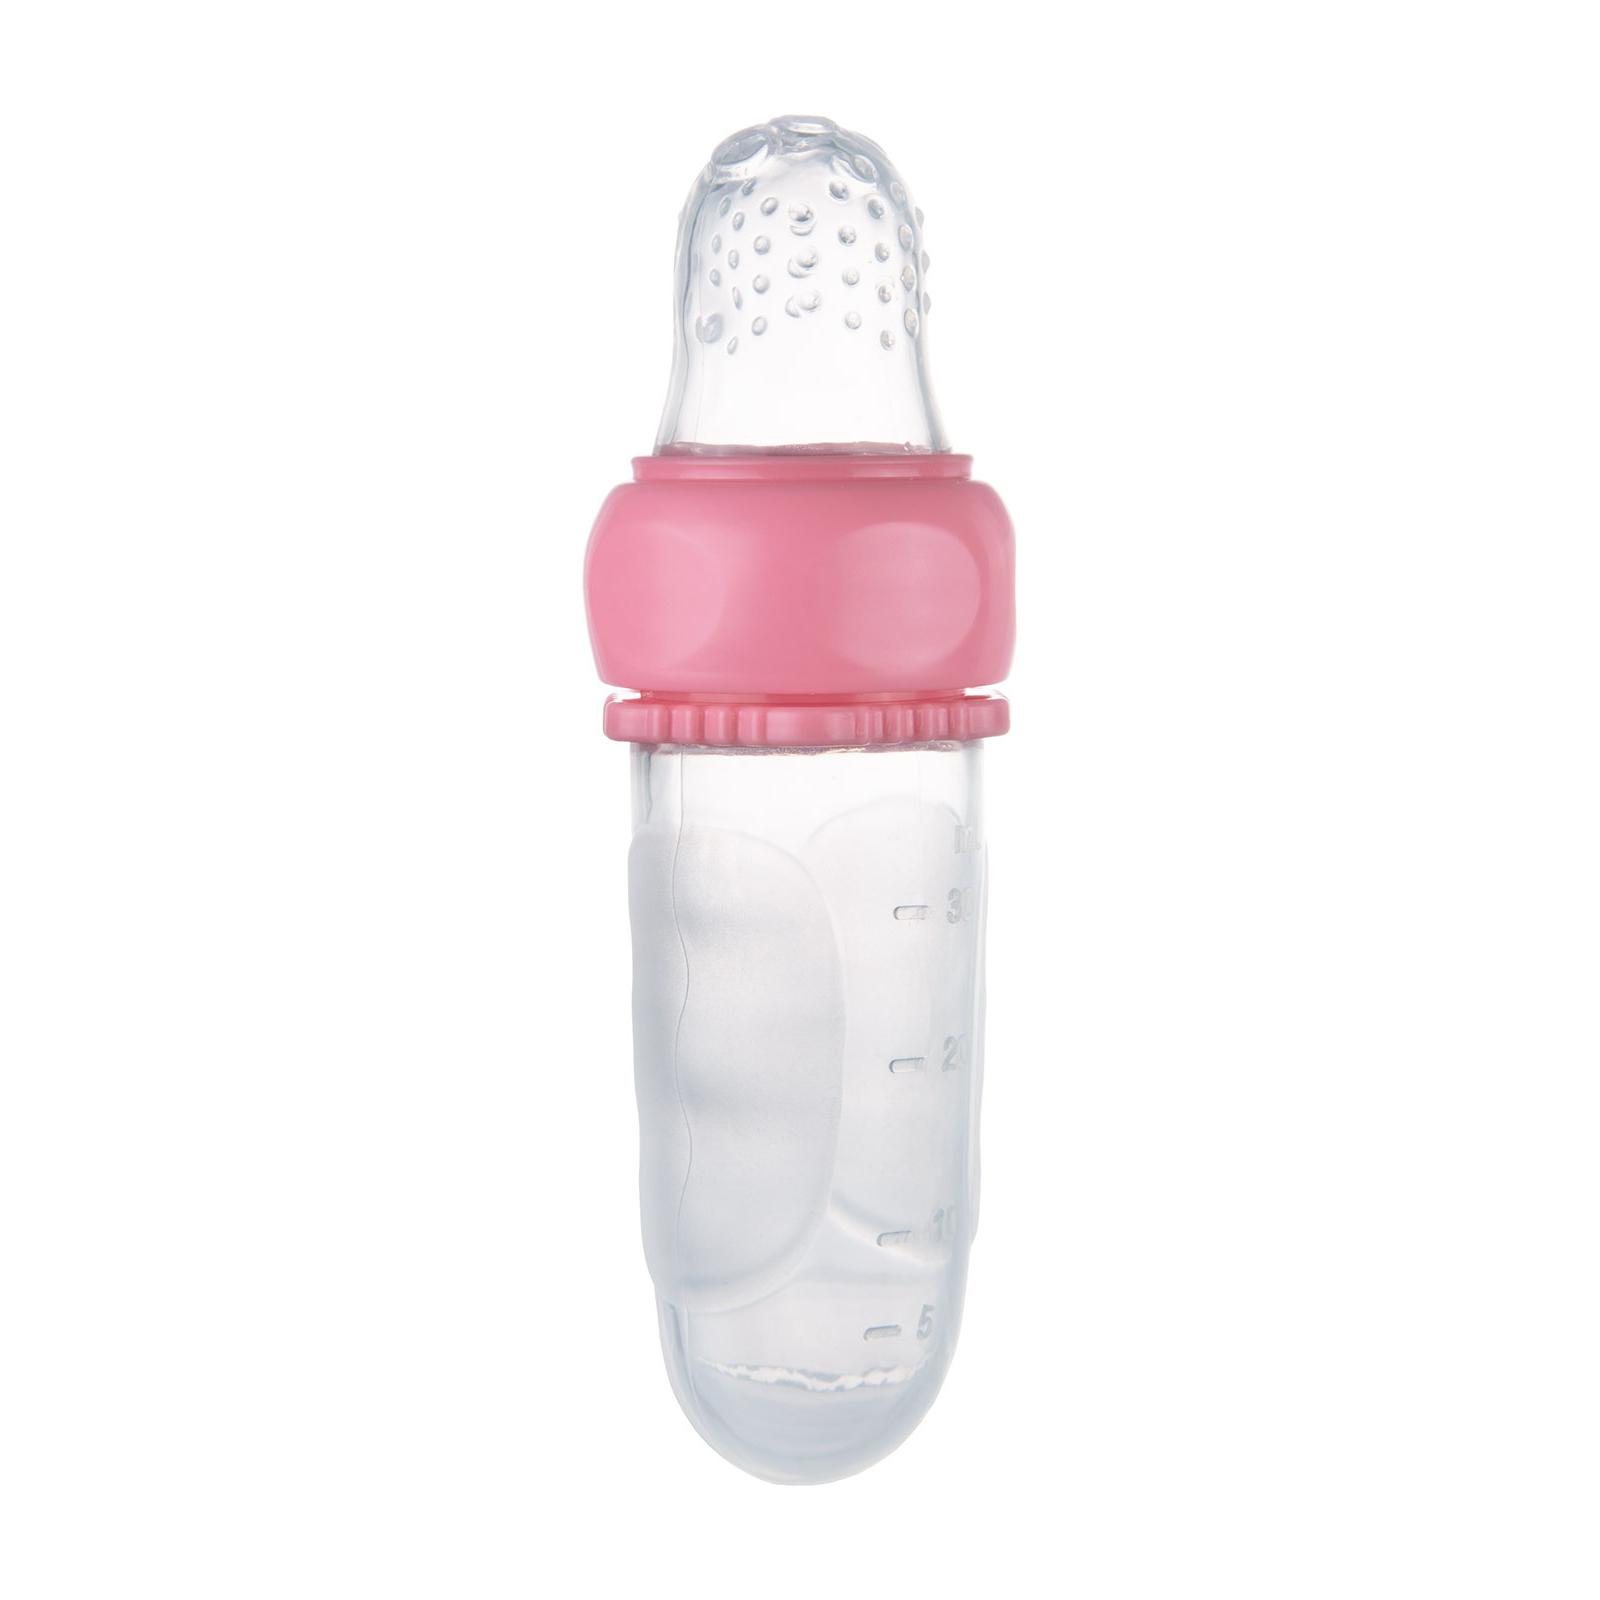 Ниблер Canpol babies силиконовый для кормления – бирюзовый (56/110_tur) изображение 2